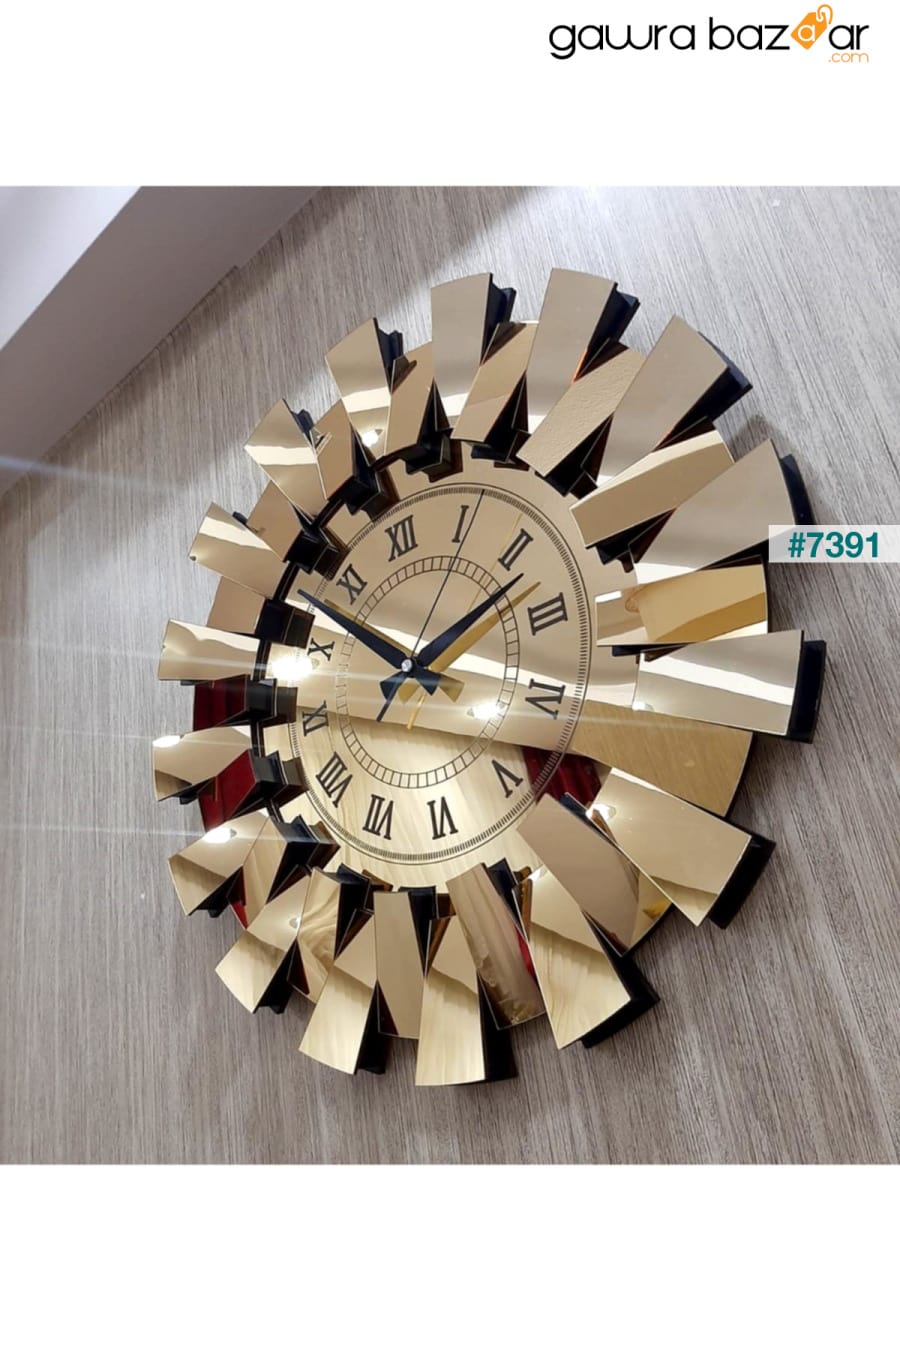 نموذج بيانو ثلاثي الأبعاد ساعة حائط معكوسة أرقام رومانية ذهبية TUĞBArt 3